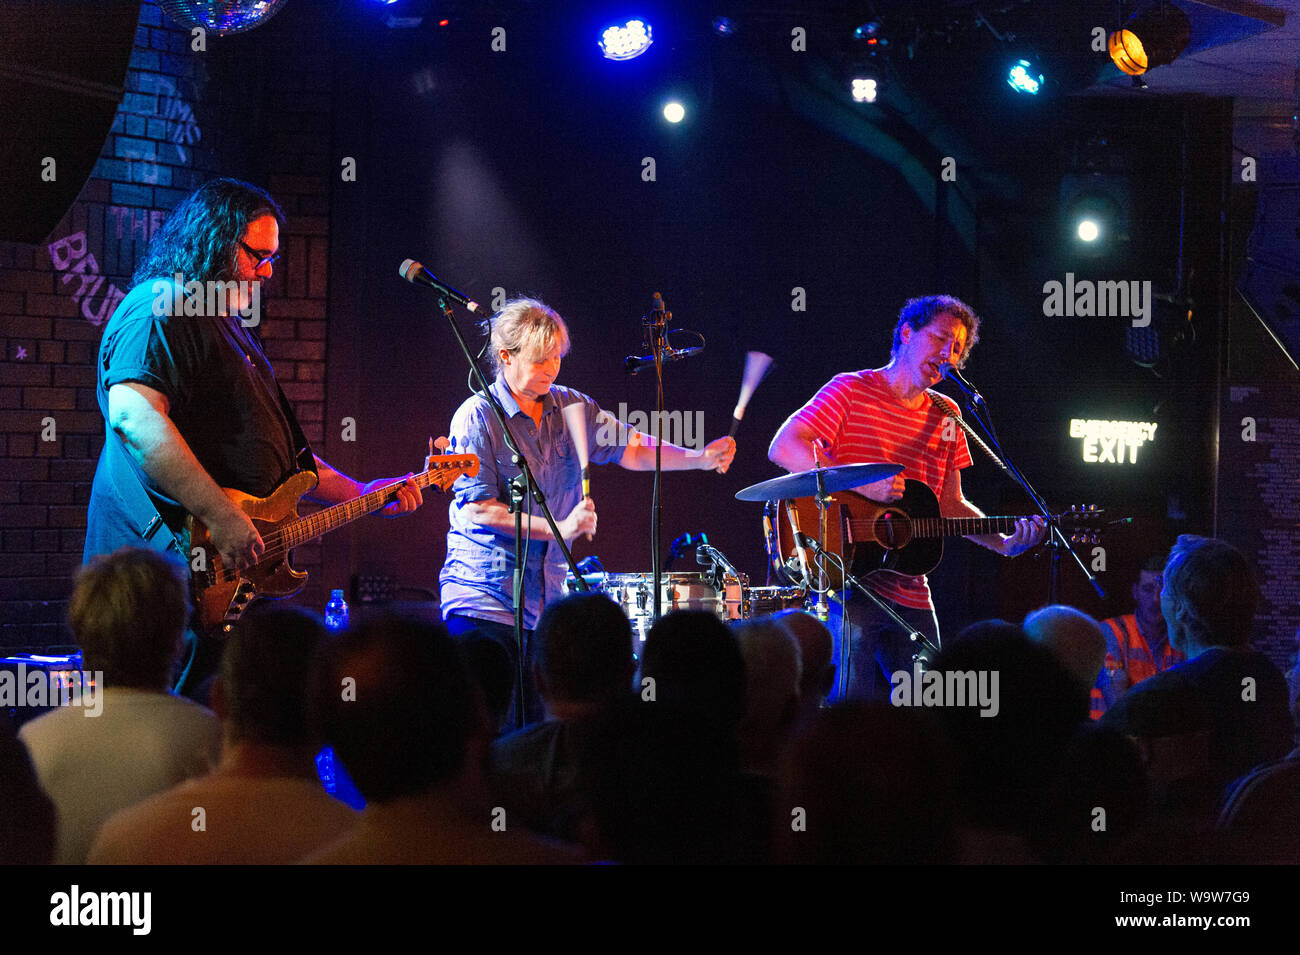 La banda de rock estadounidense Yo La Tengo en un concierto en el Club Social Brudenell, Leeds. Izquierda-Derecha, James McNew, Georgia Hubley e Ira Kaplan. Foto de stock